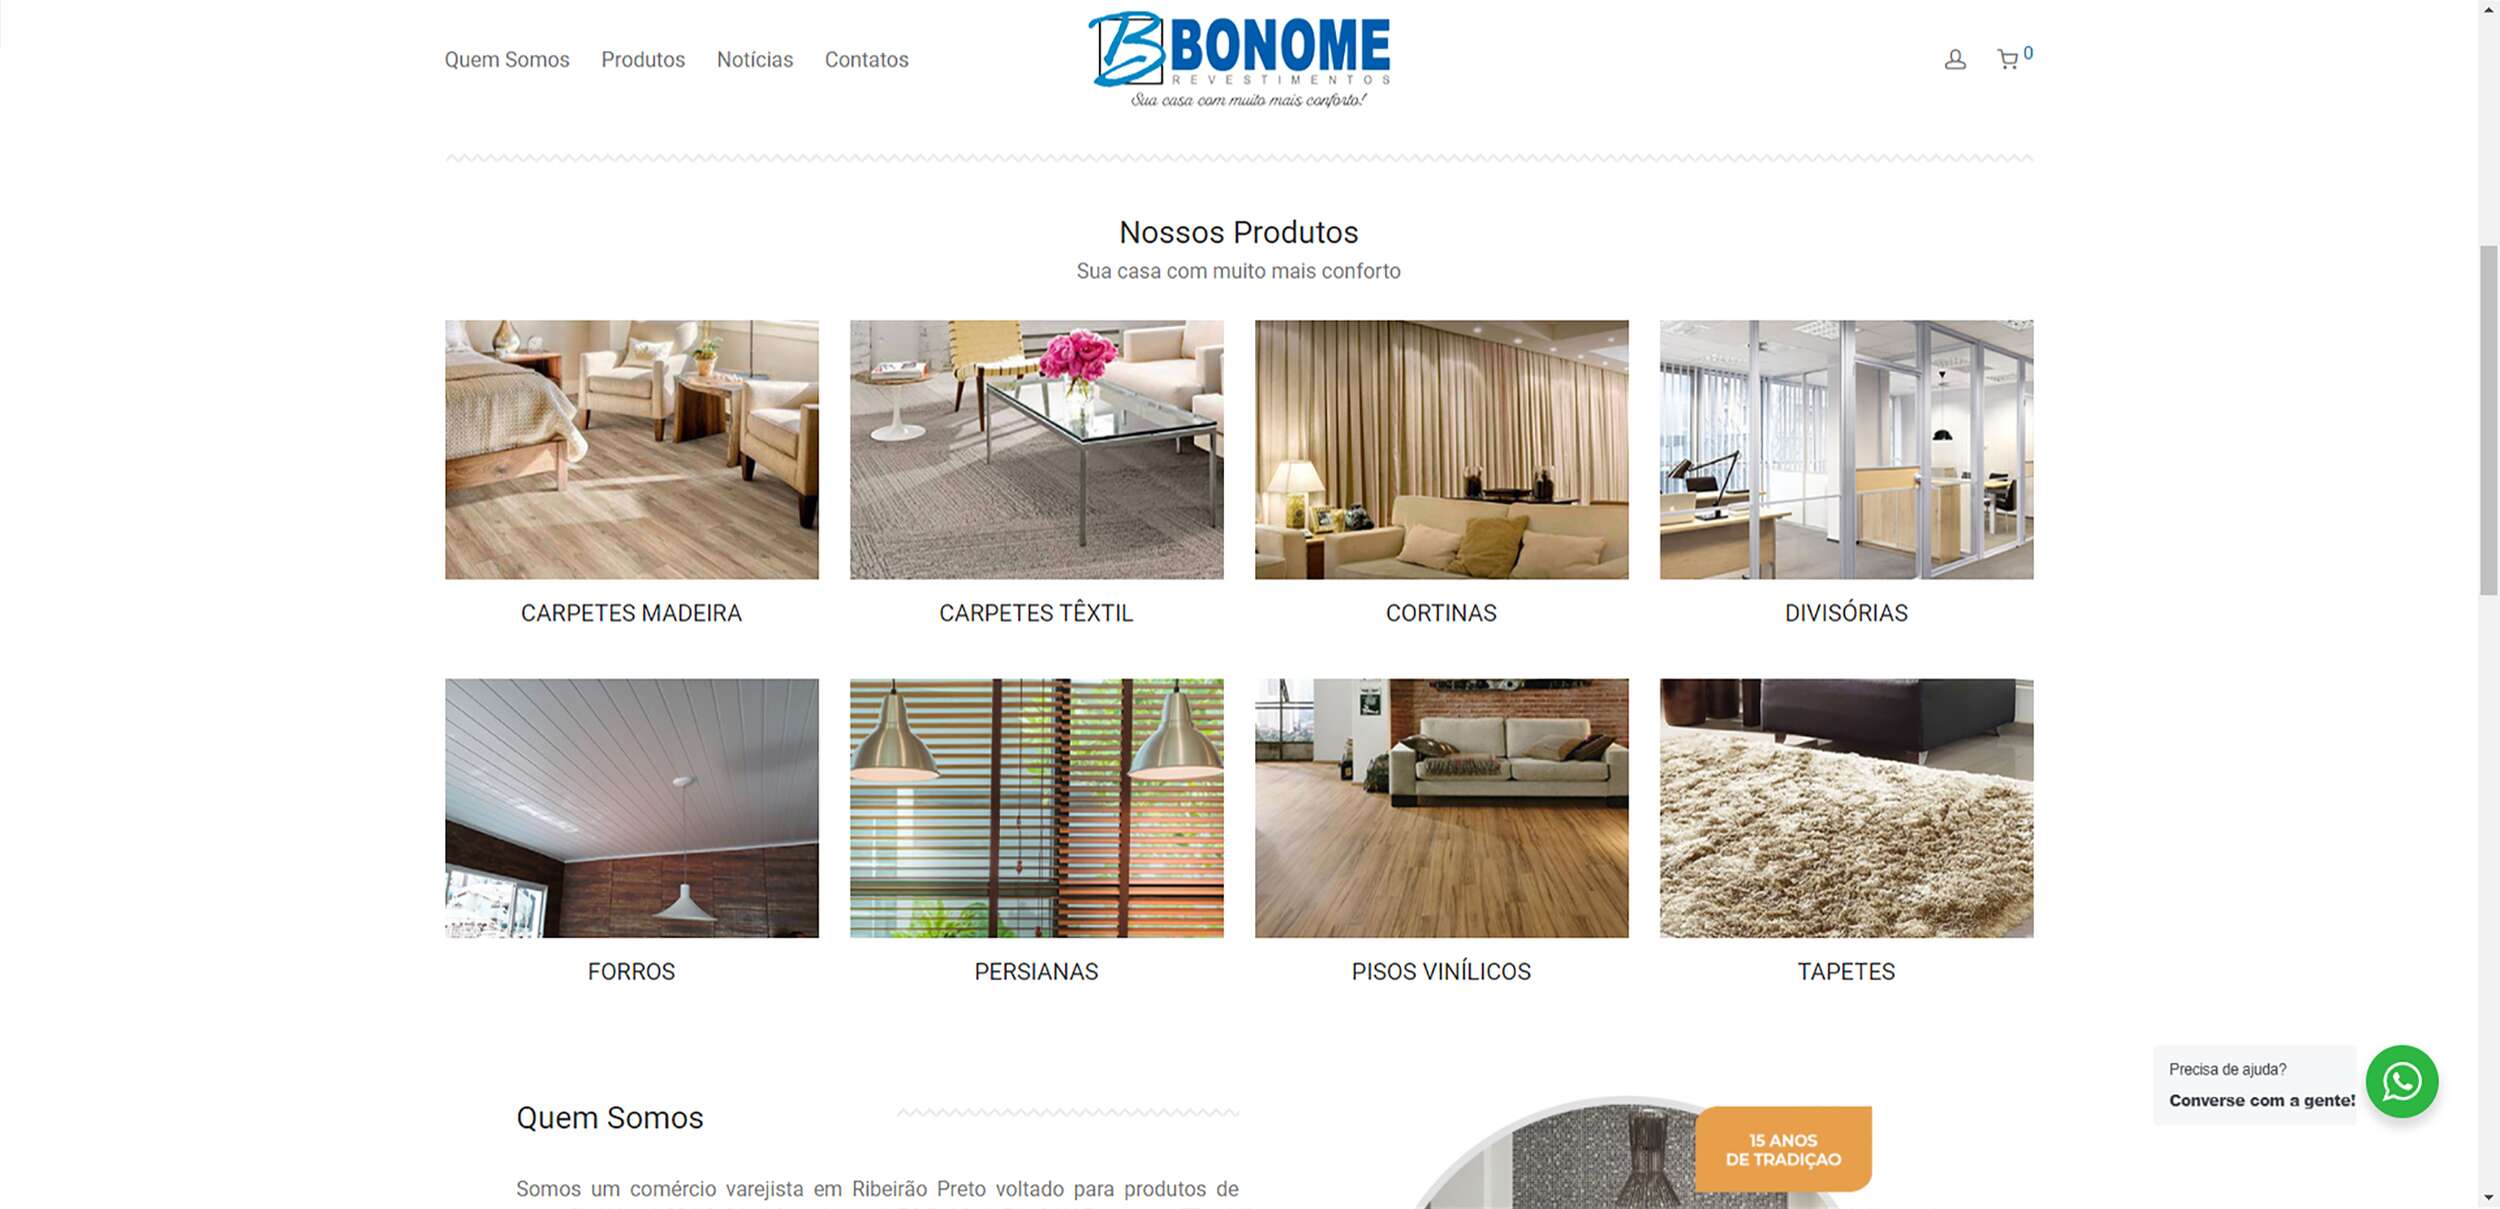 RAO Marketing Digital - Bonome Revestimentos Website